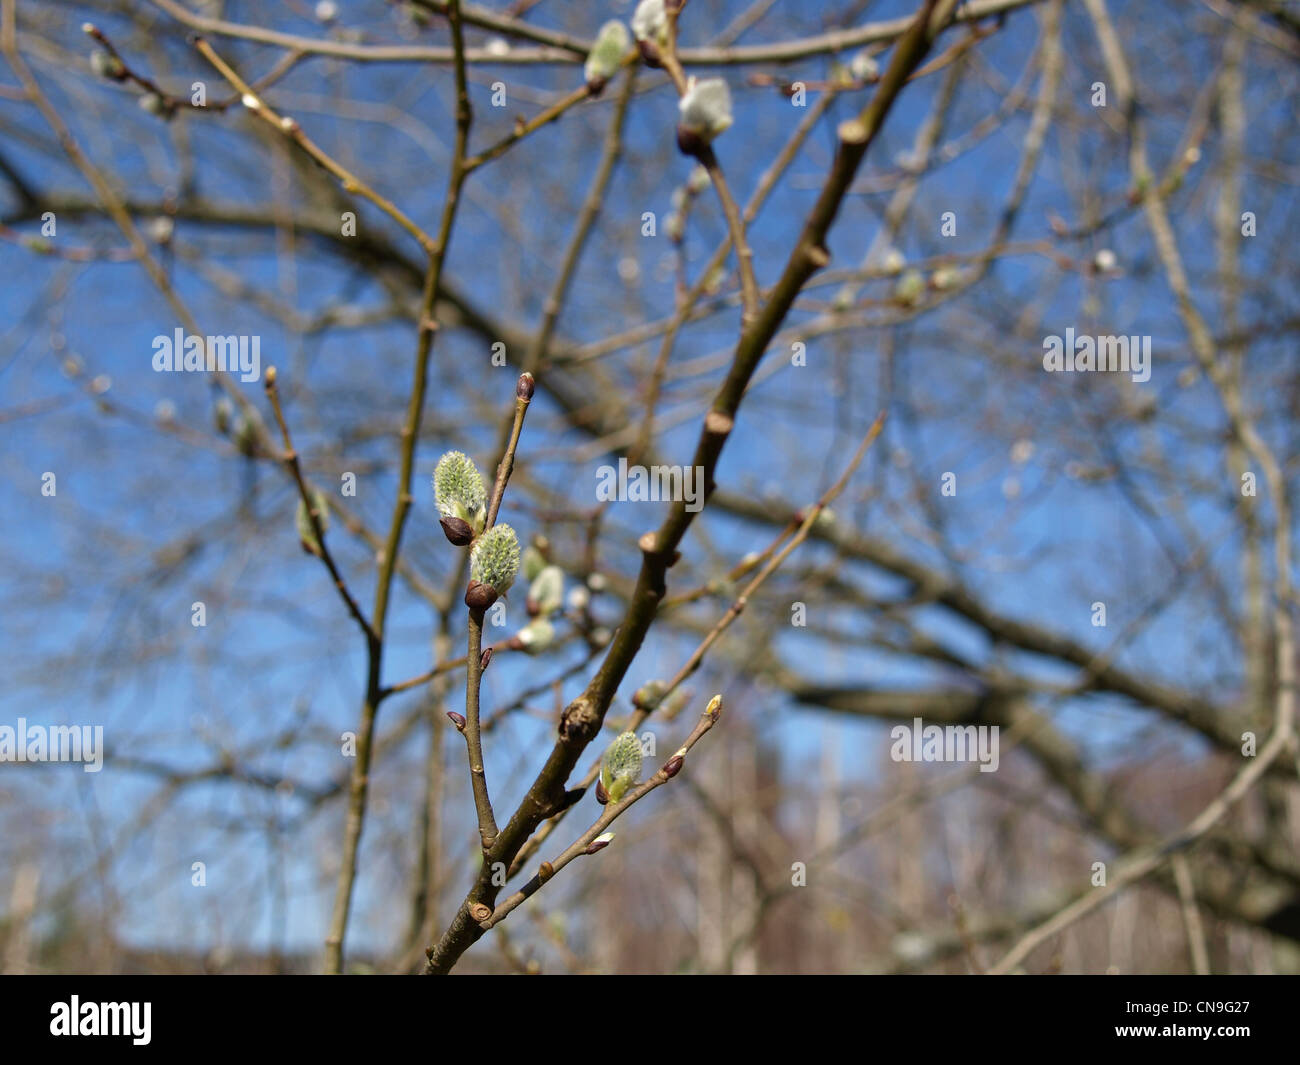 willow  catkins in spring / Salix / Weiden Kätzchen im Frühling Stock Photo